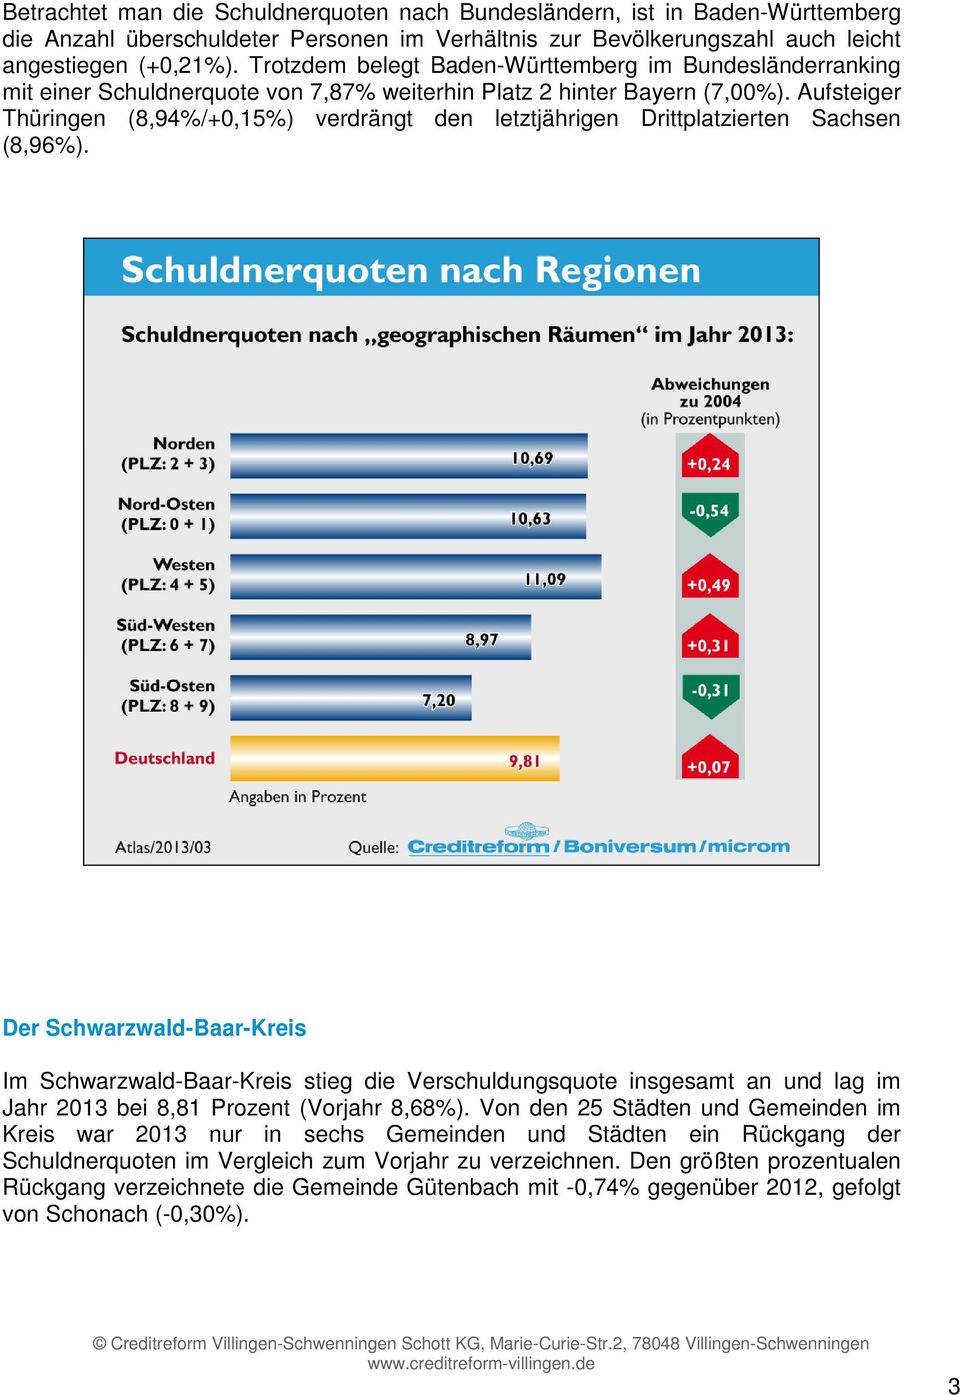 Aufsteiger Thüringen (8,94%/+0,15%) verdrängt den letztjährigen Drittplatzierten Sachsen (8,96%).